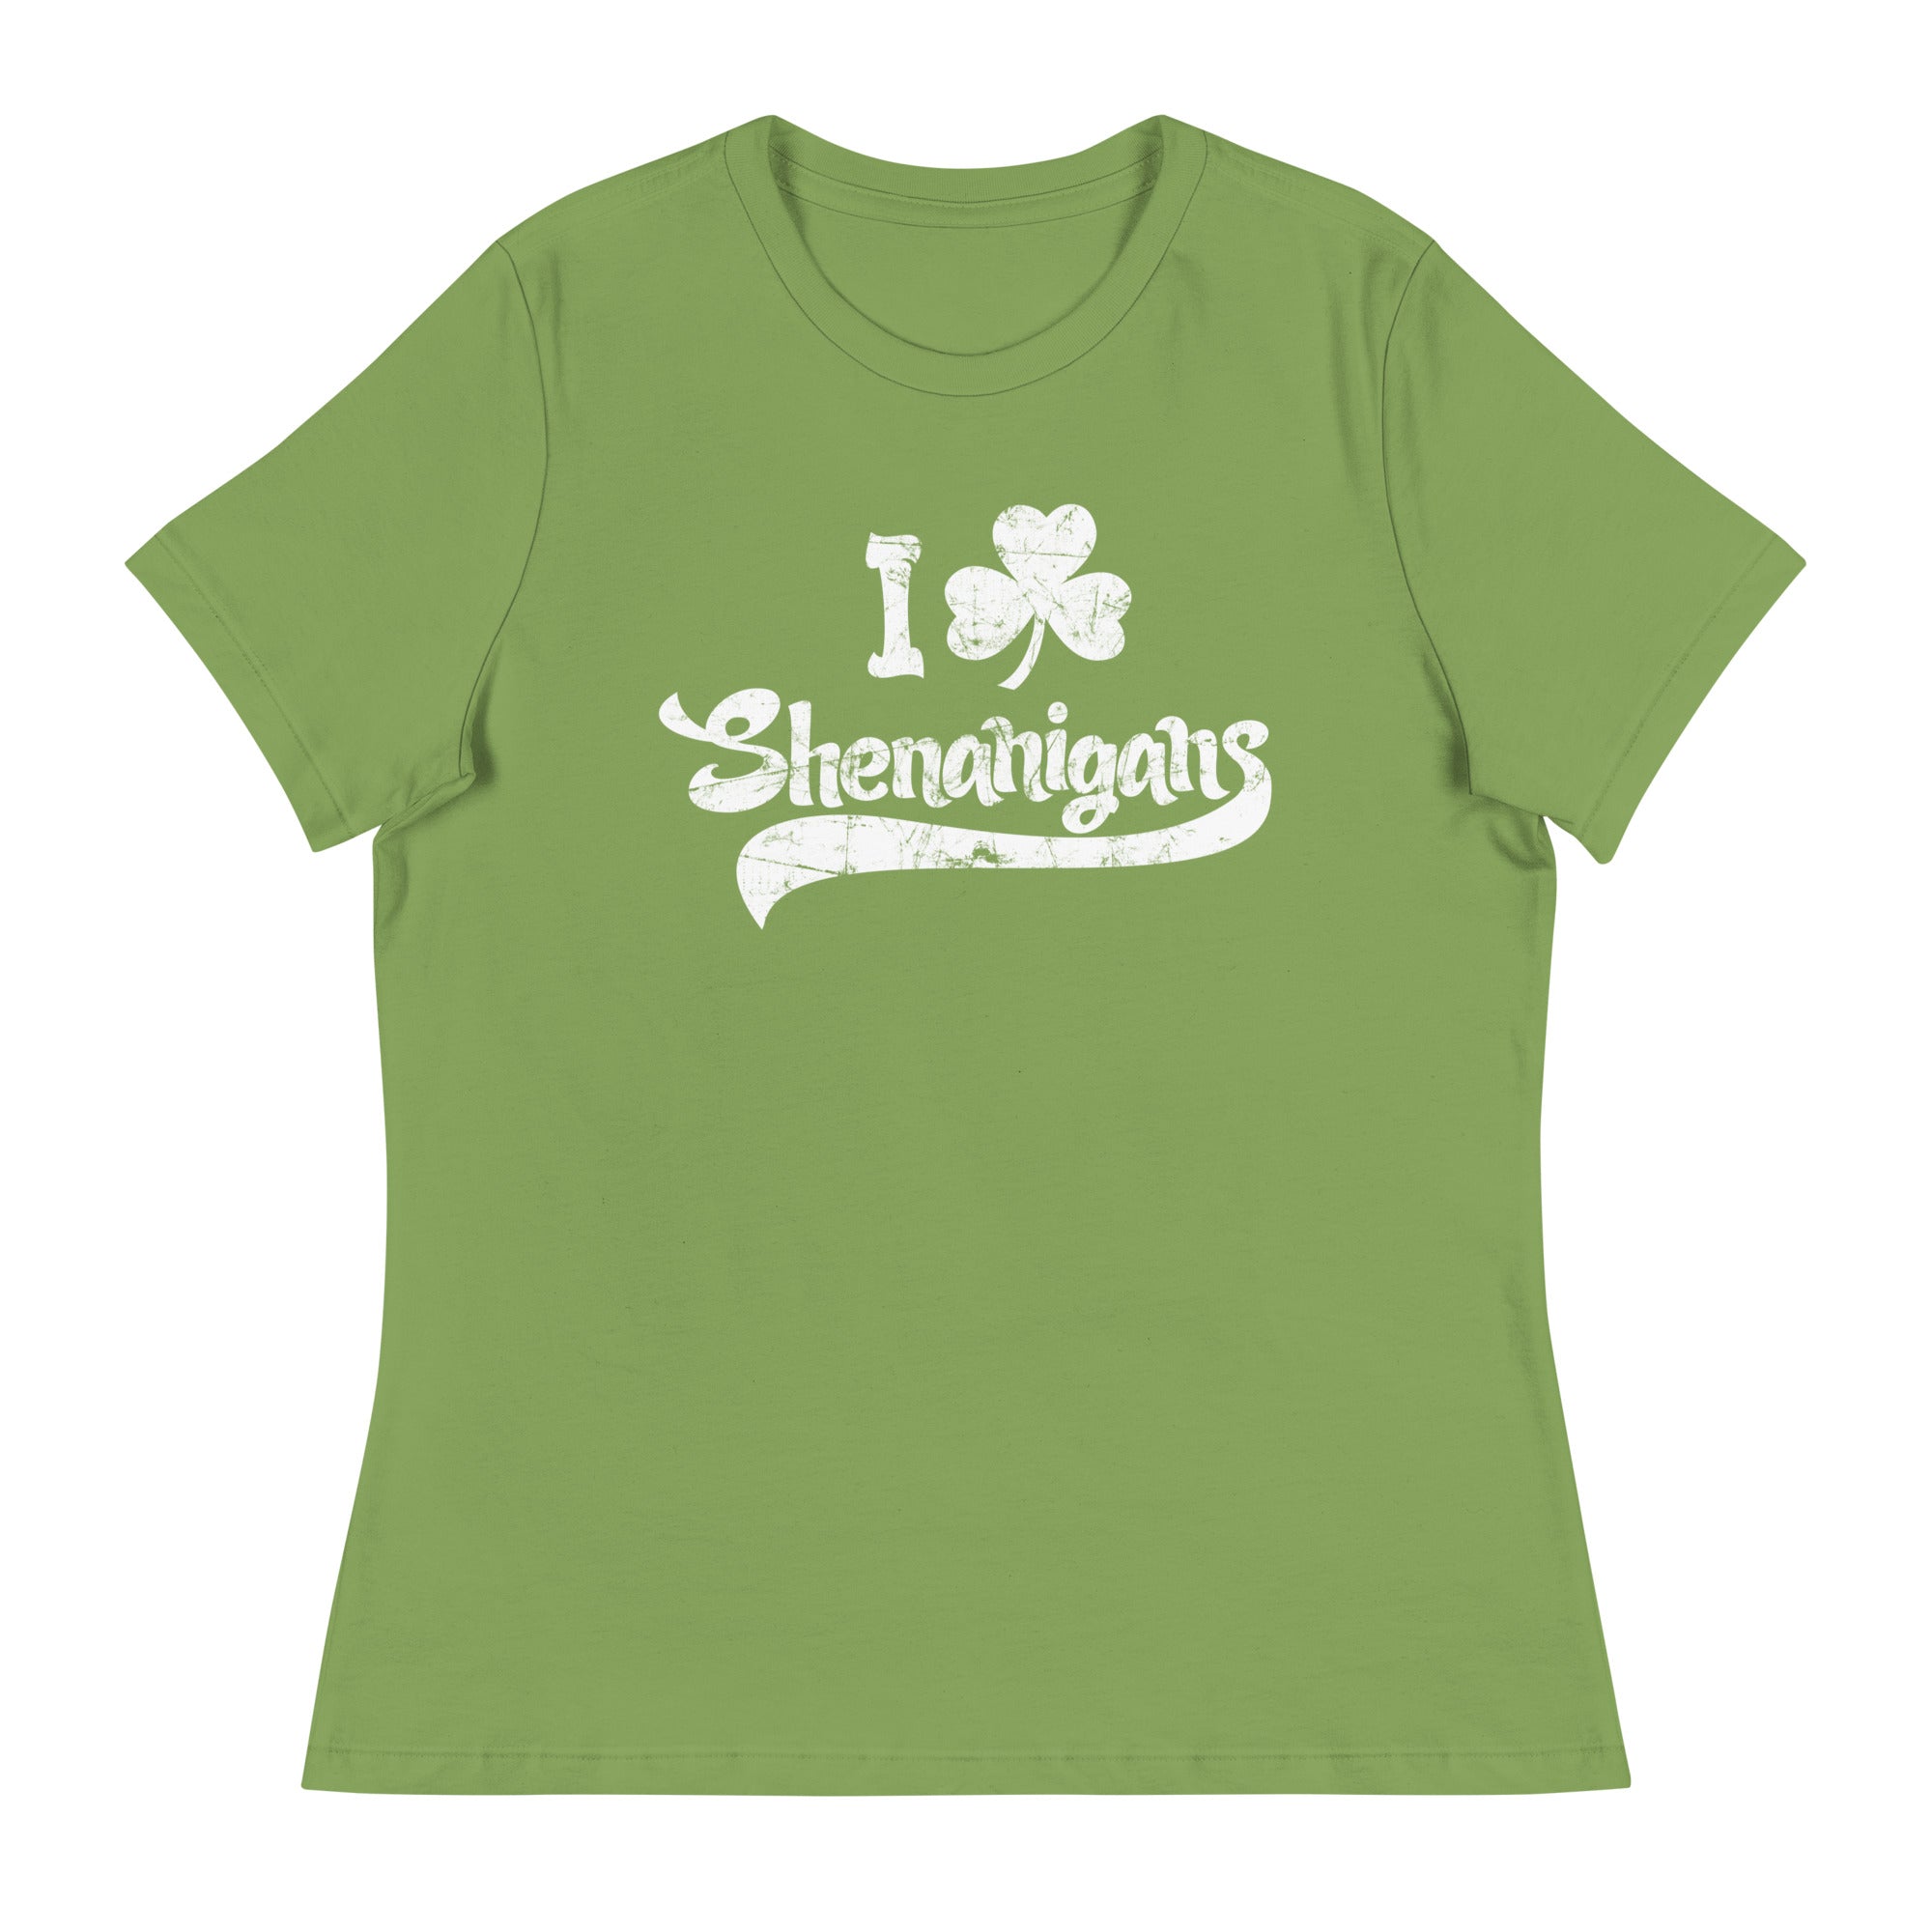 I Shamrock Shenanigans Women's Relaxed T-Shirt